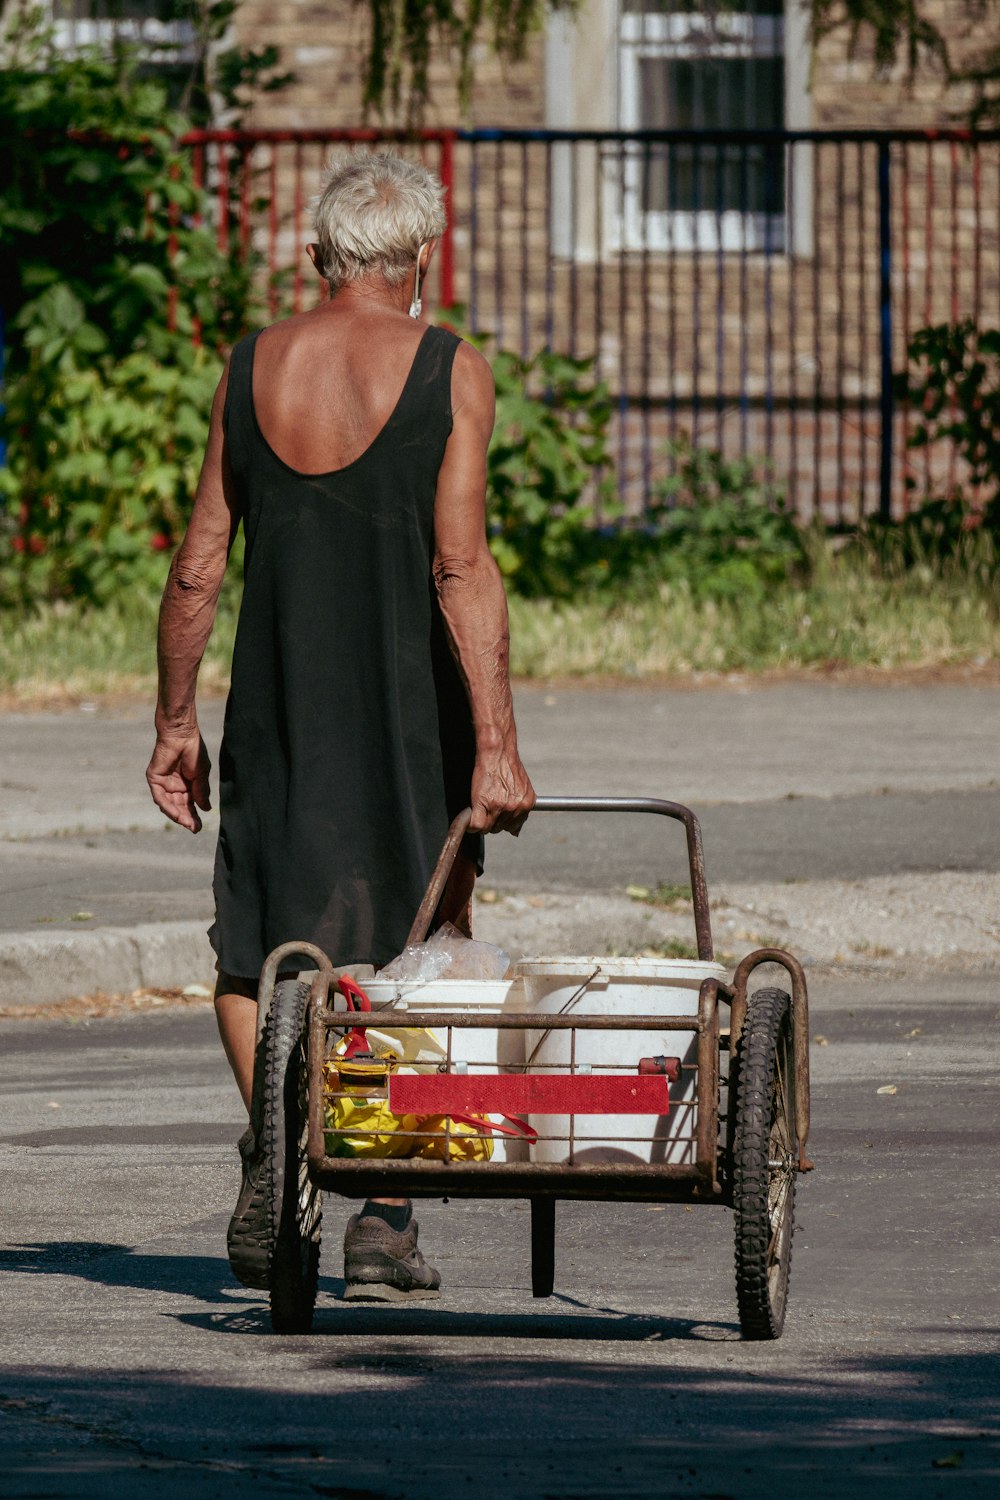 une personne poussant un chariot avec un panier dessus